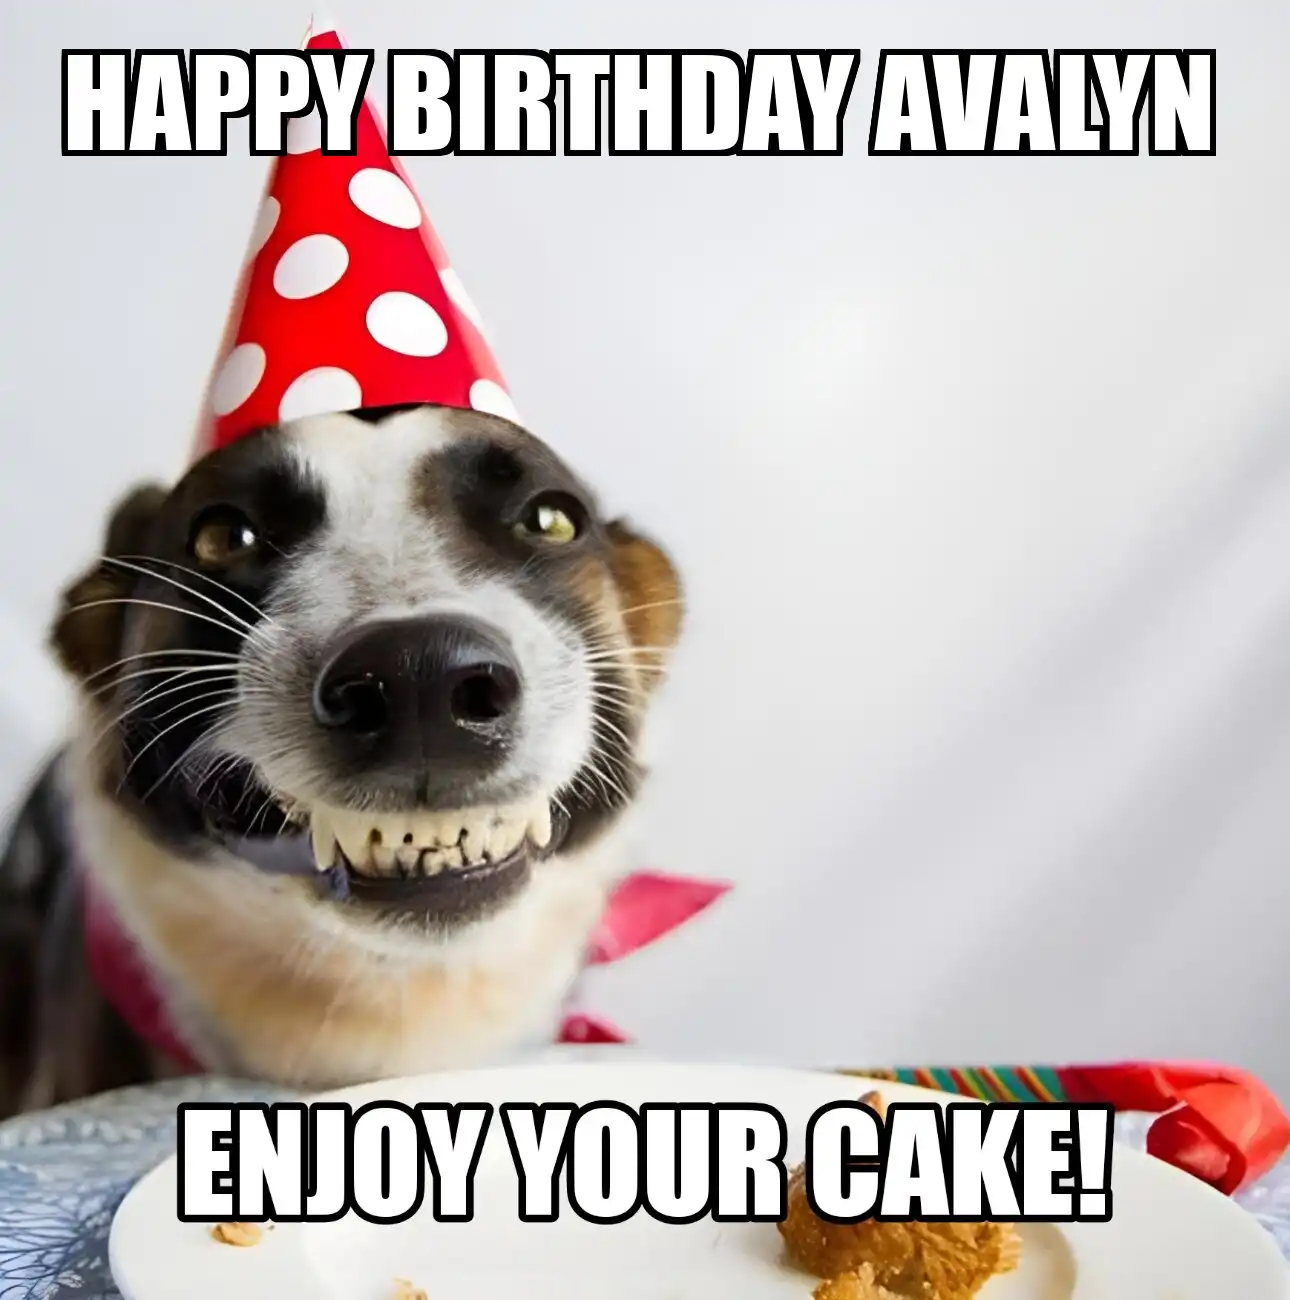 Happy Birthday Avalyn Enjoy Your Cake Dog Meme